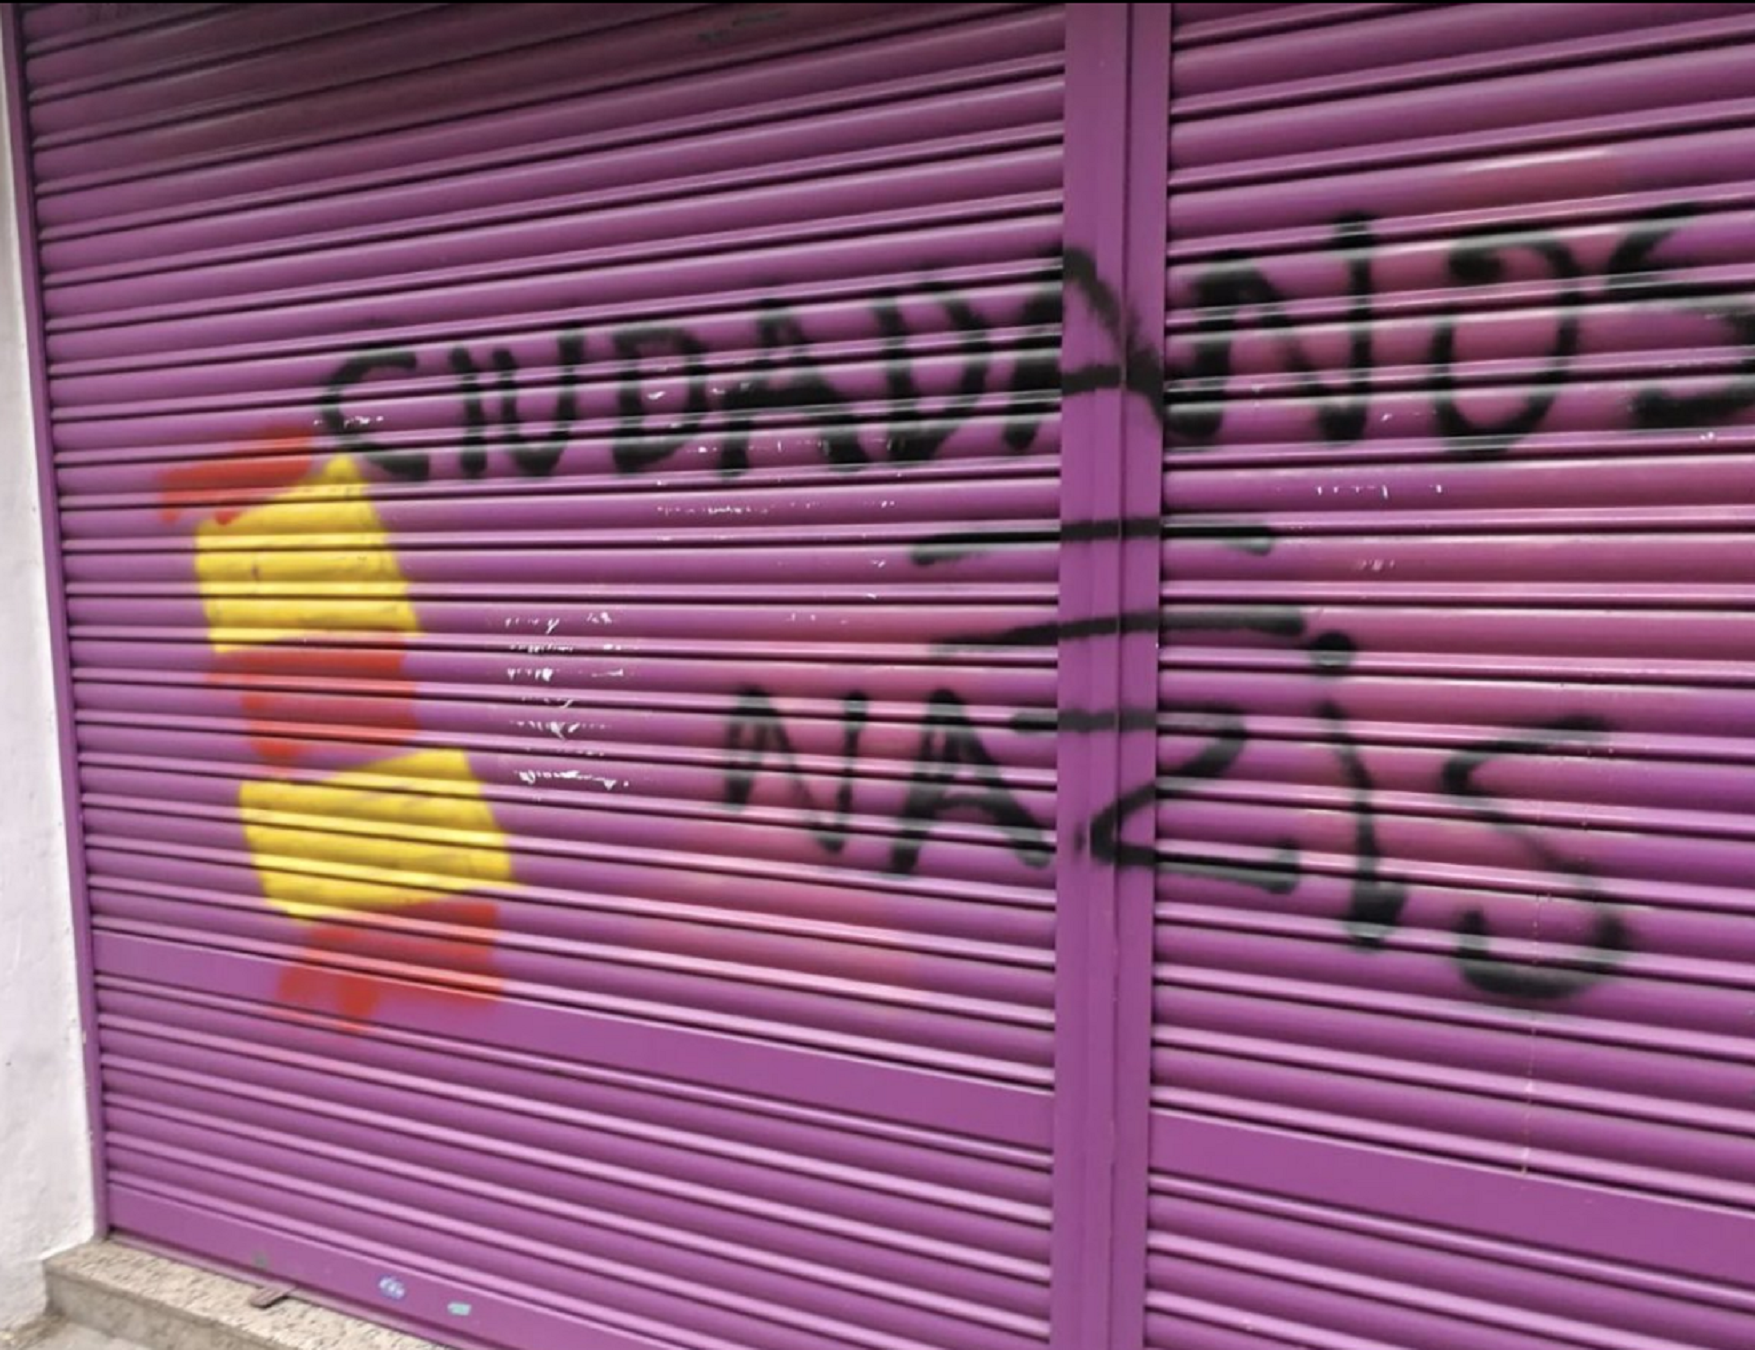 Rahola ataca Albert Rivera per haver manipulat un grafiti i criminalitzat indepes